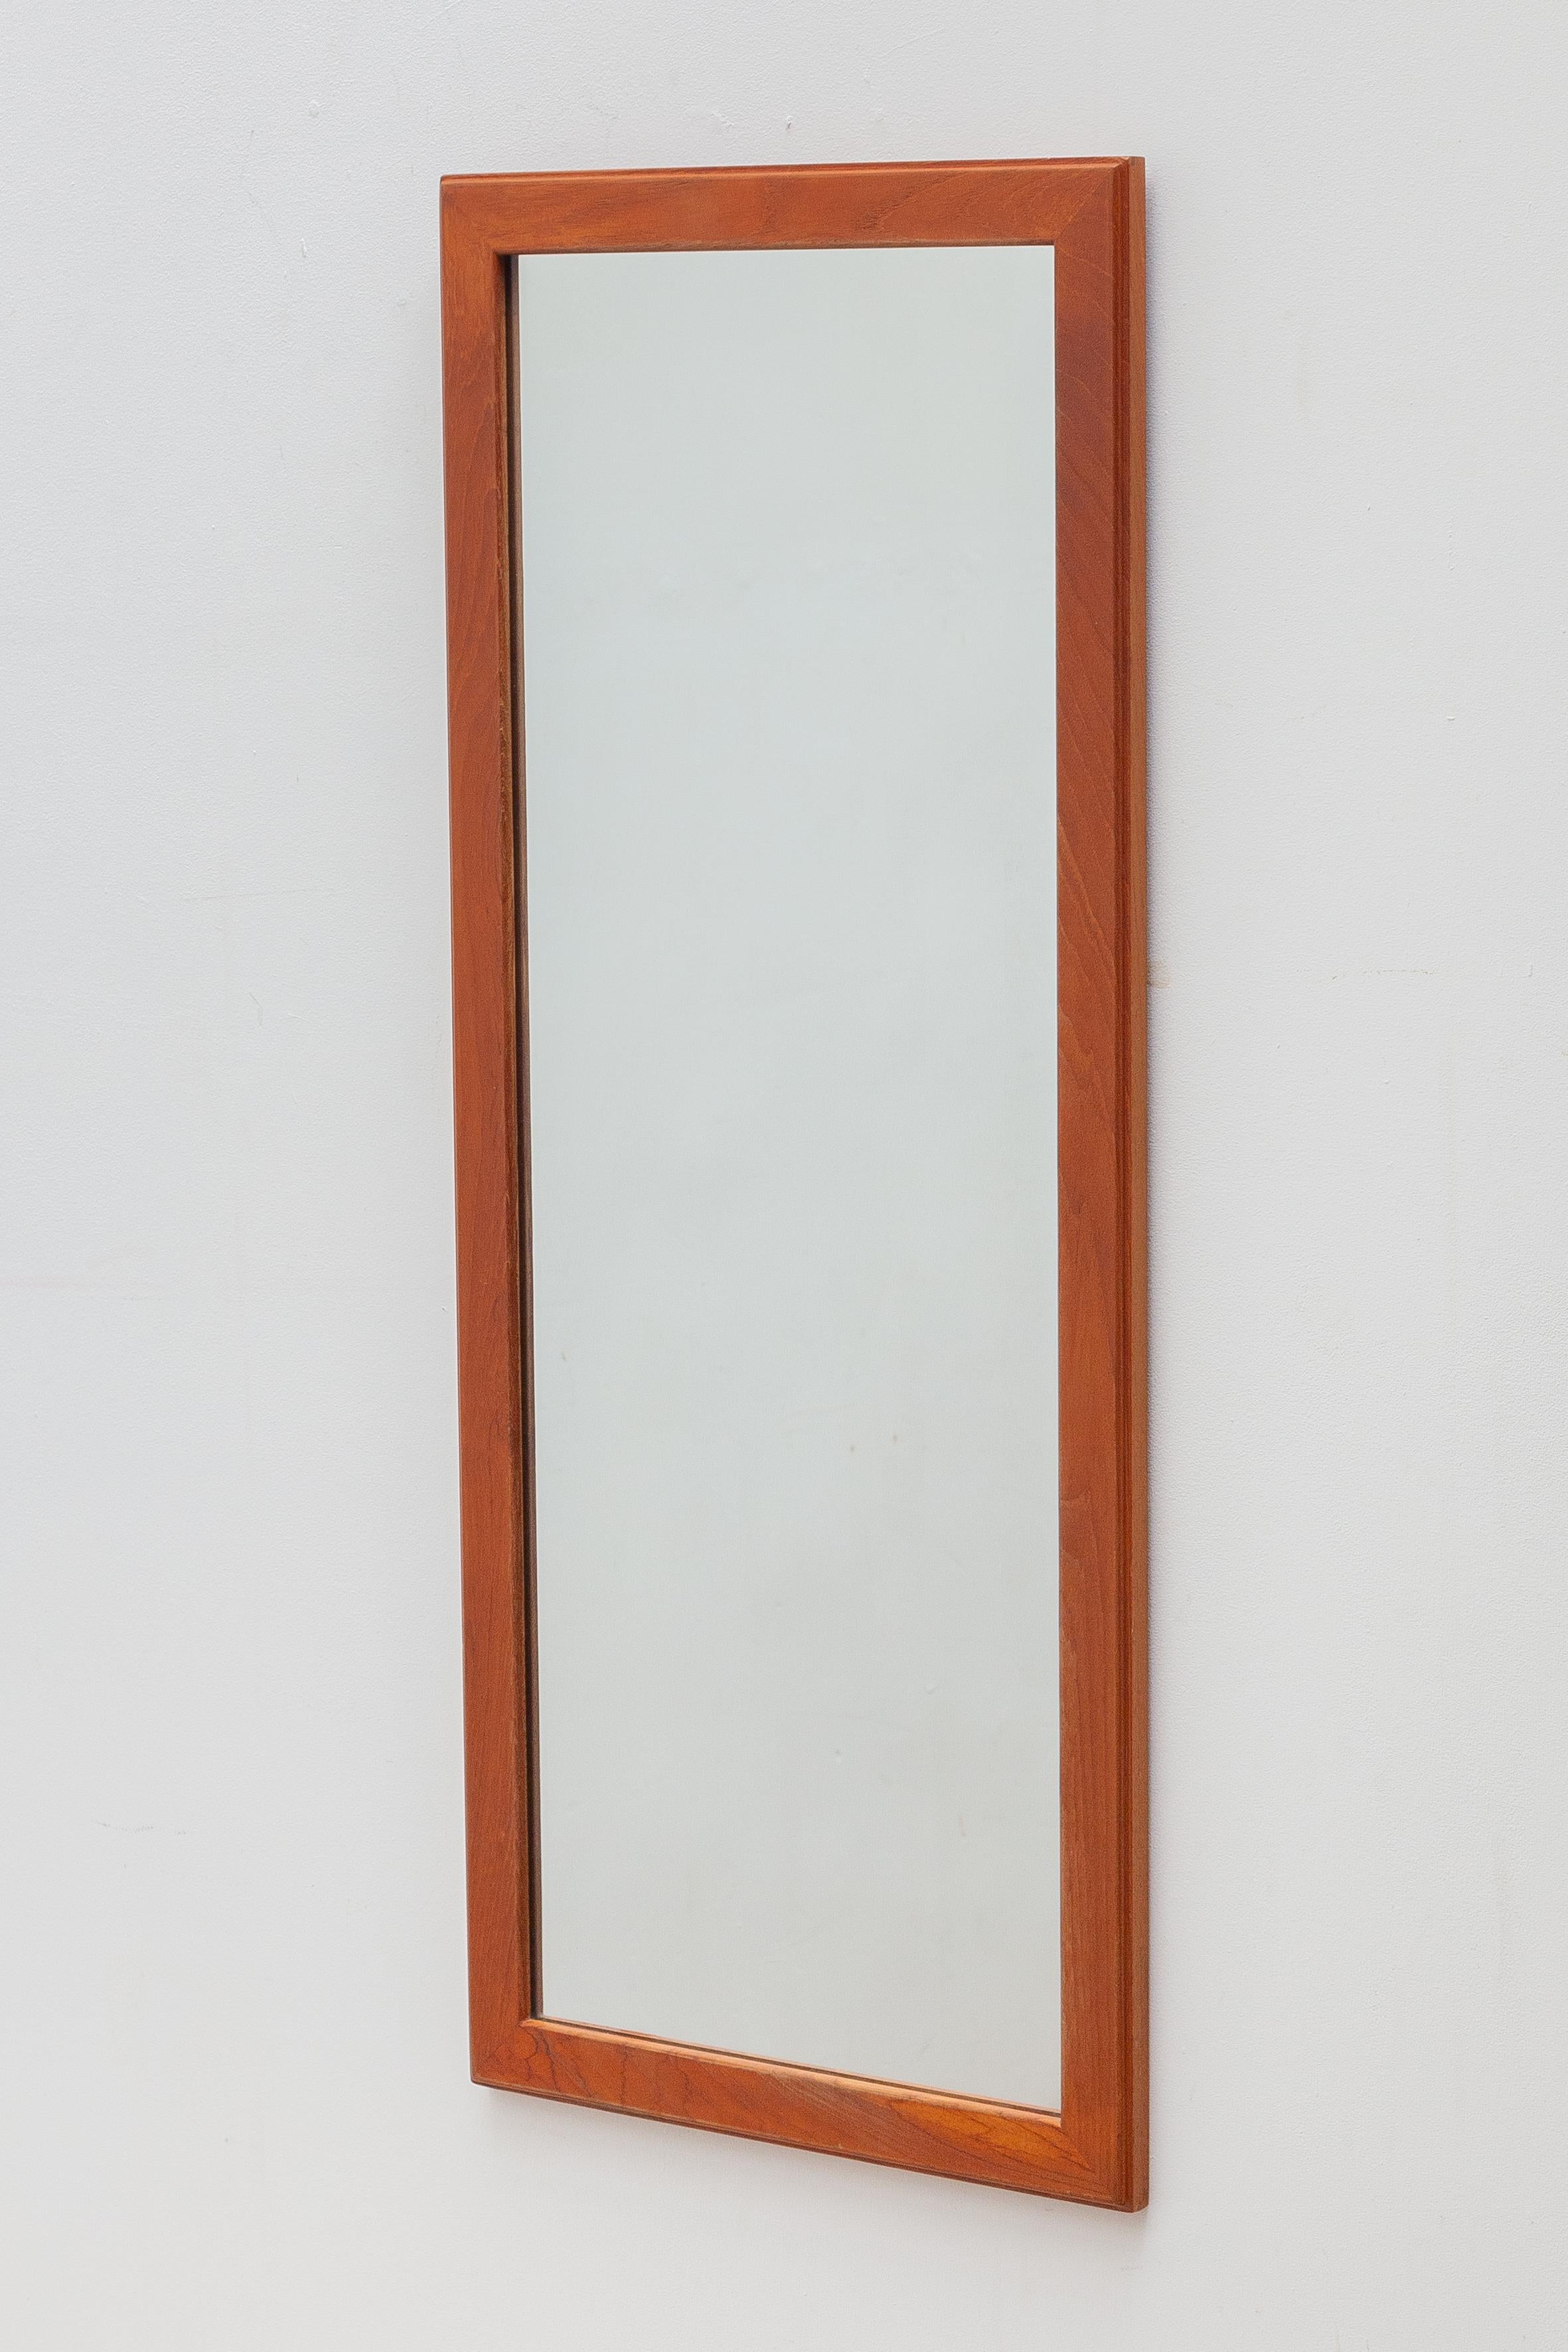 Vintage-Wandspiegel von Aksel Kjersgaard. . Hergestellt von Kjersgaard, Odder furniture, Dänemark, um 1960. Originaler guter Zustand, große Größe, Höhe 105 cm.